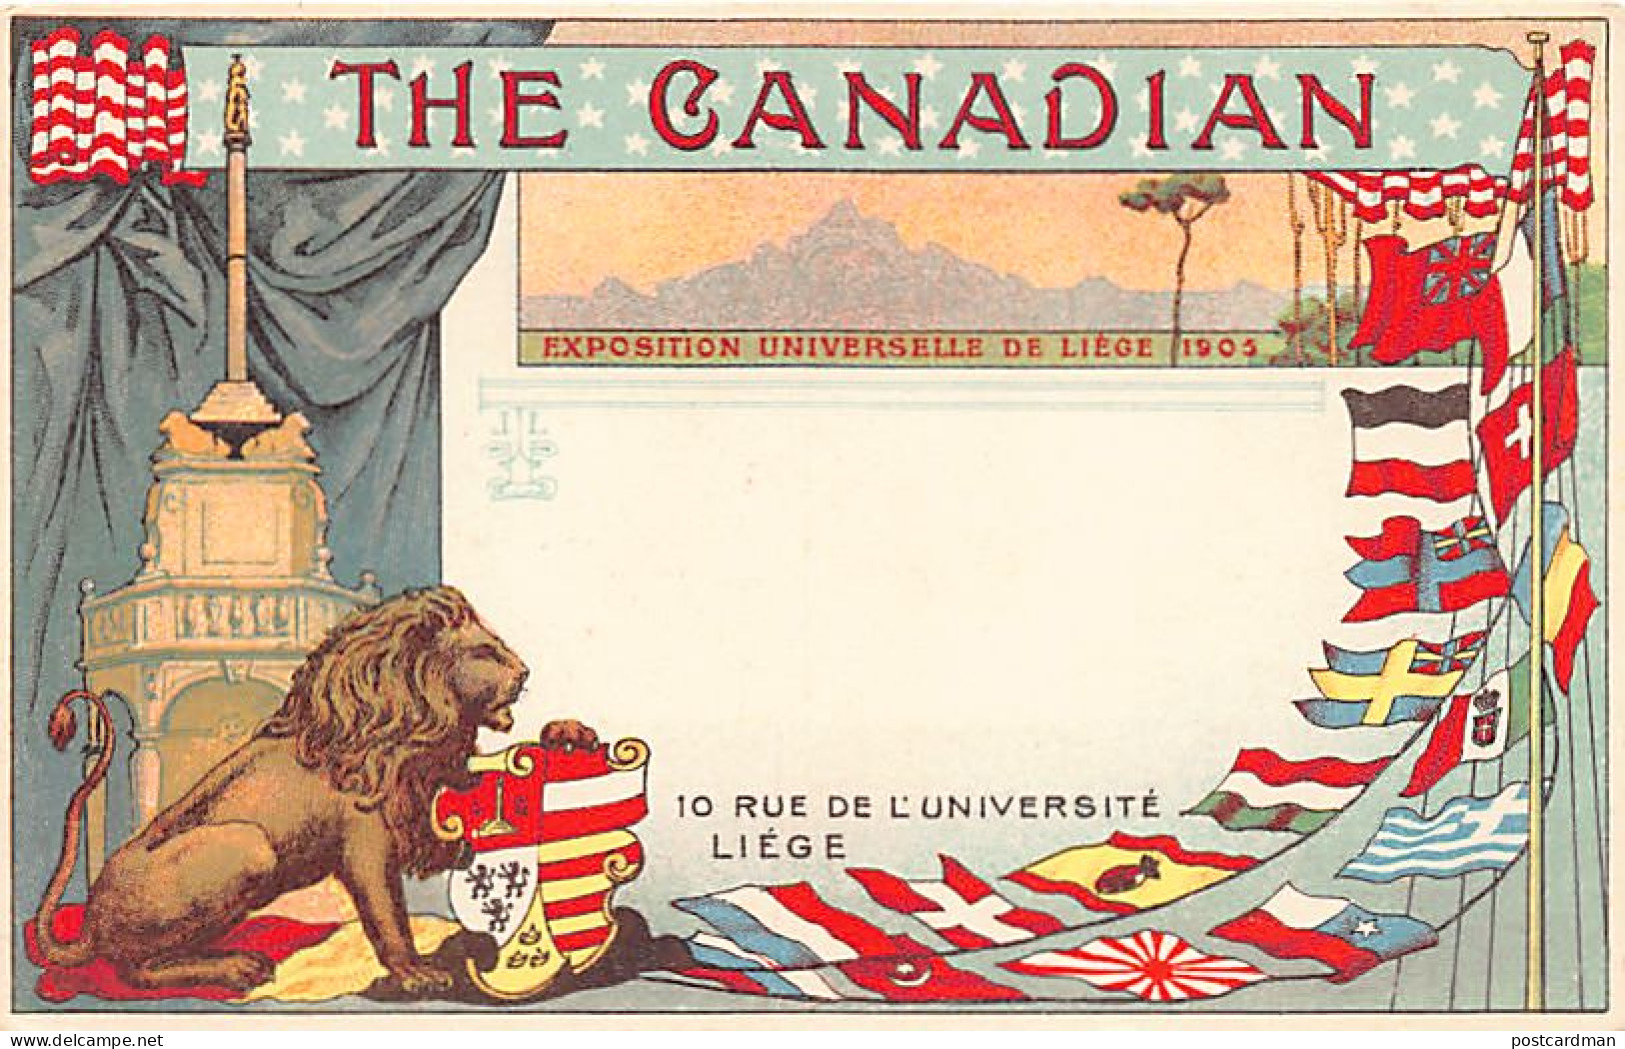 Exposition Universelle De Liège De 1905 - The Canadian - 10 Rue De L'Université - Liège